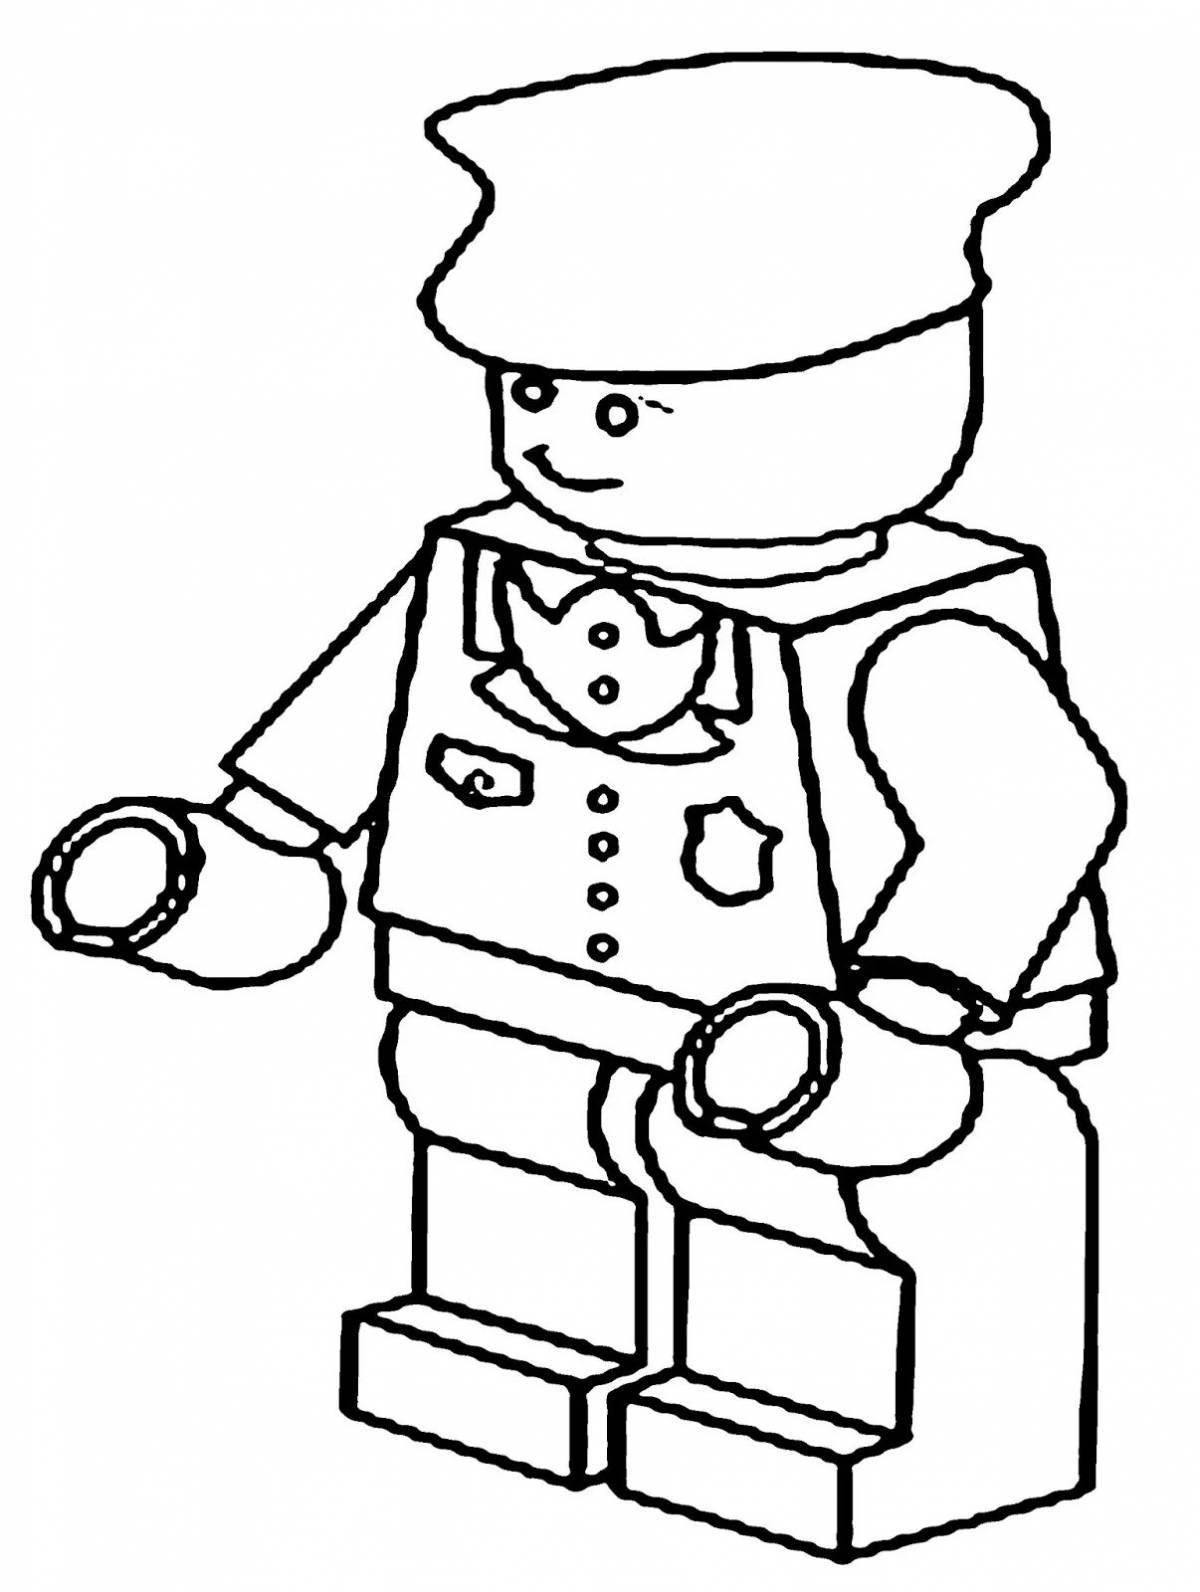 Анимированные раскраски игрушечных солдатиков lego